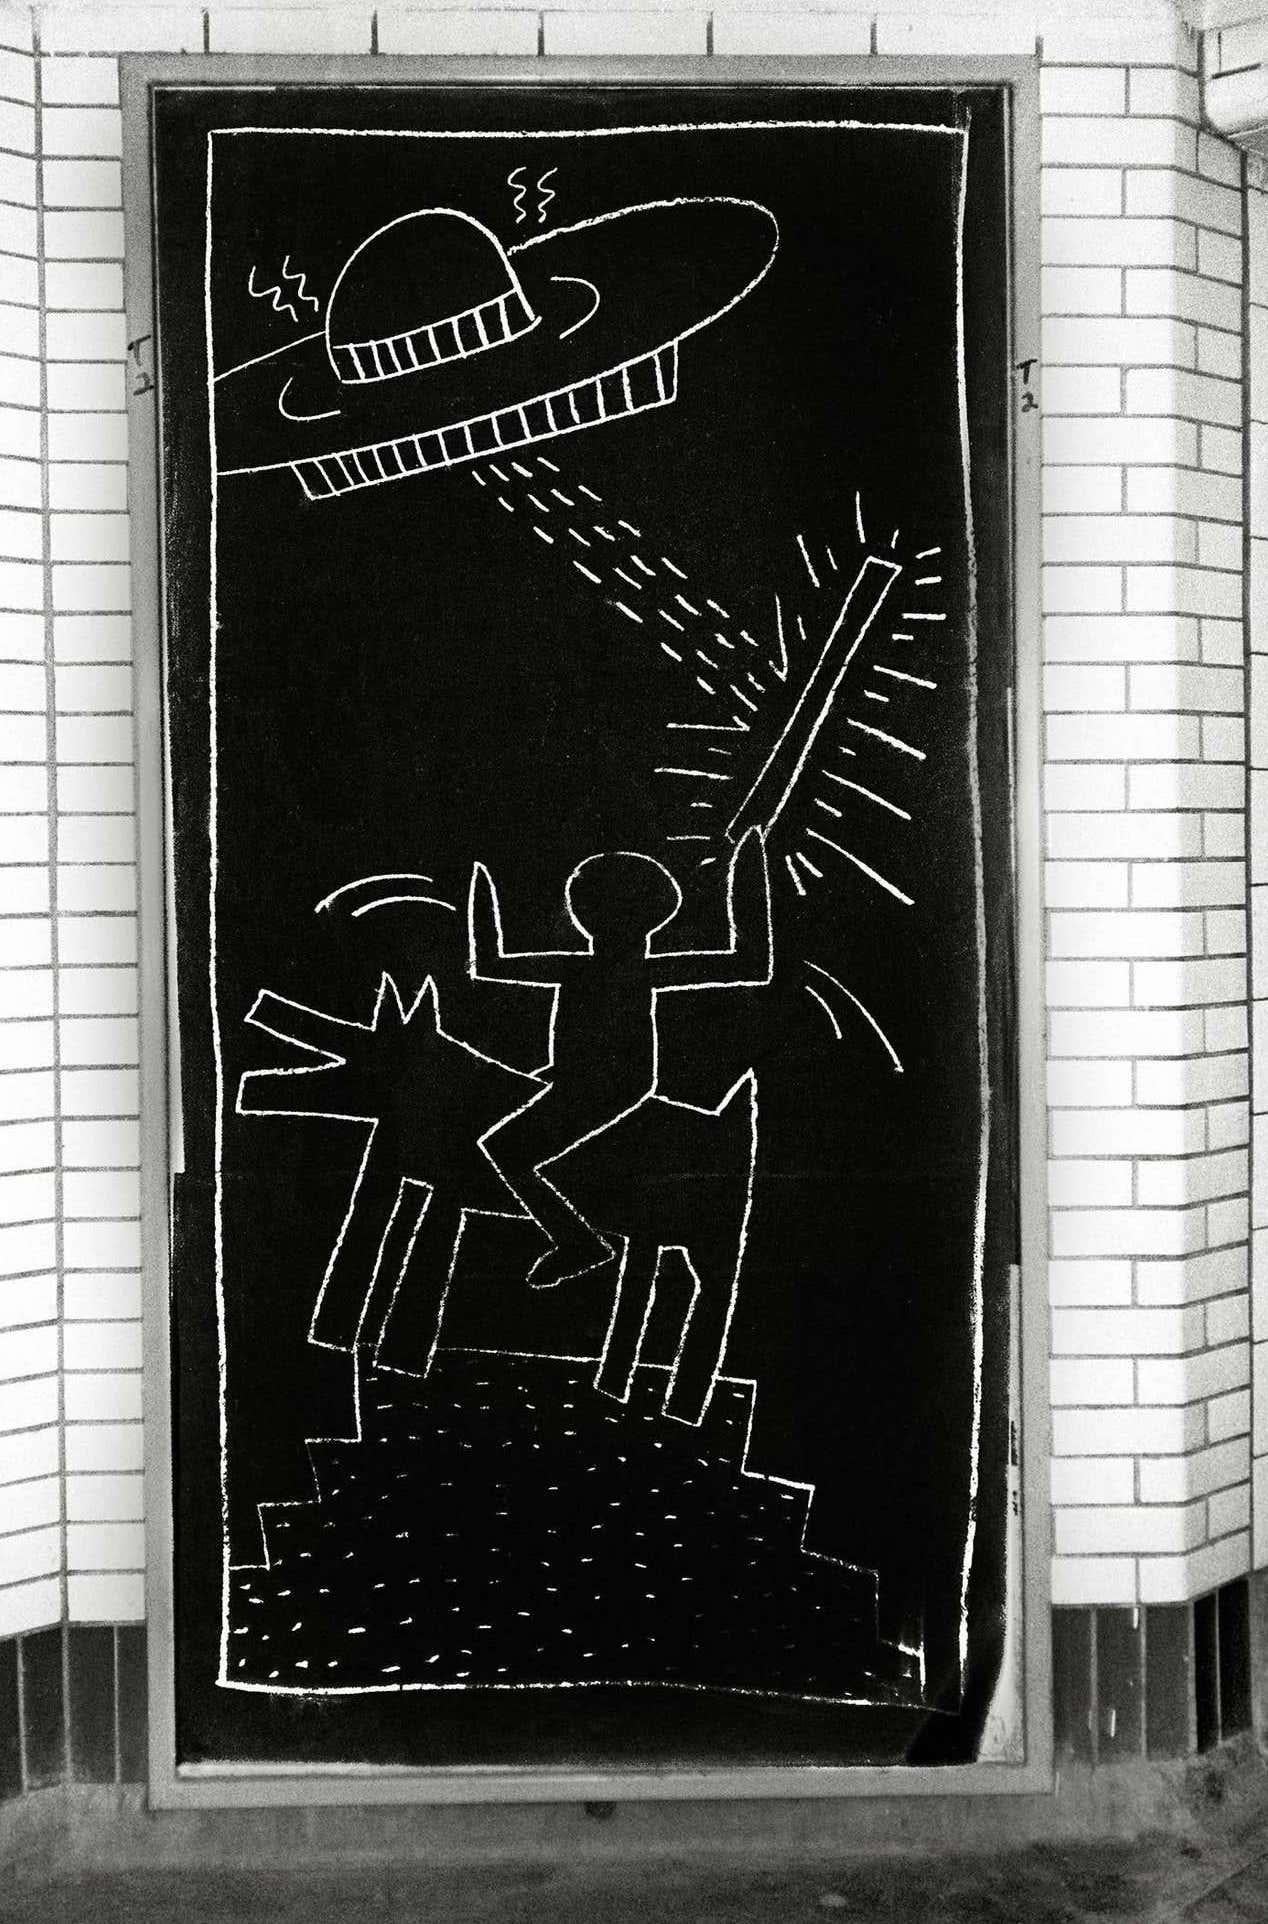 Keith Haring Subway Art photo c.1981 (Keith Haring subway drawings)  - Pop Art Photograph by Fernando Natalici